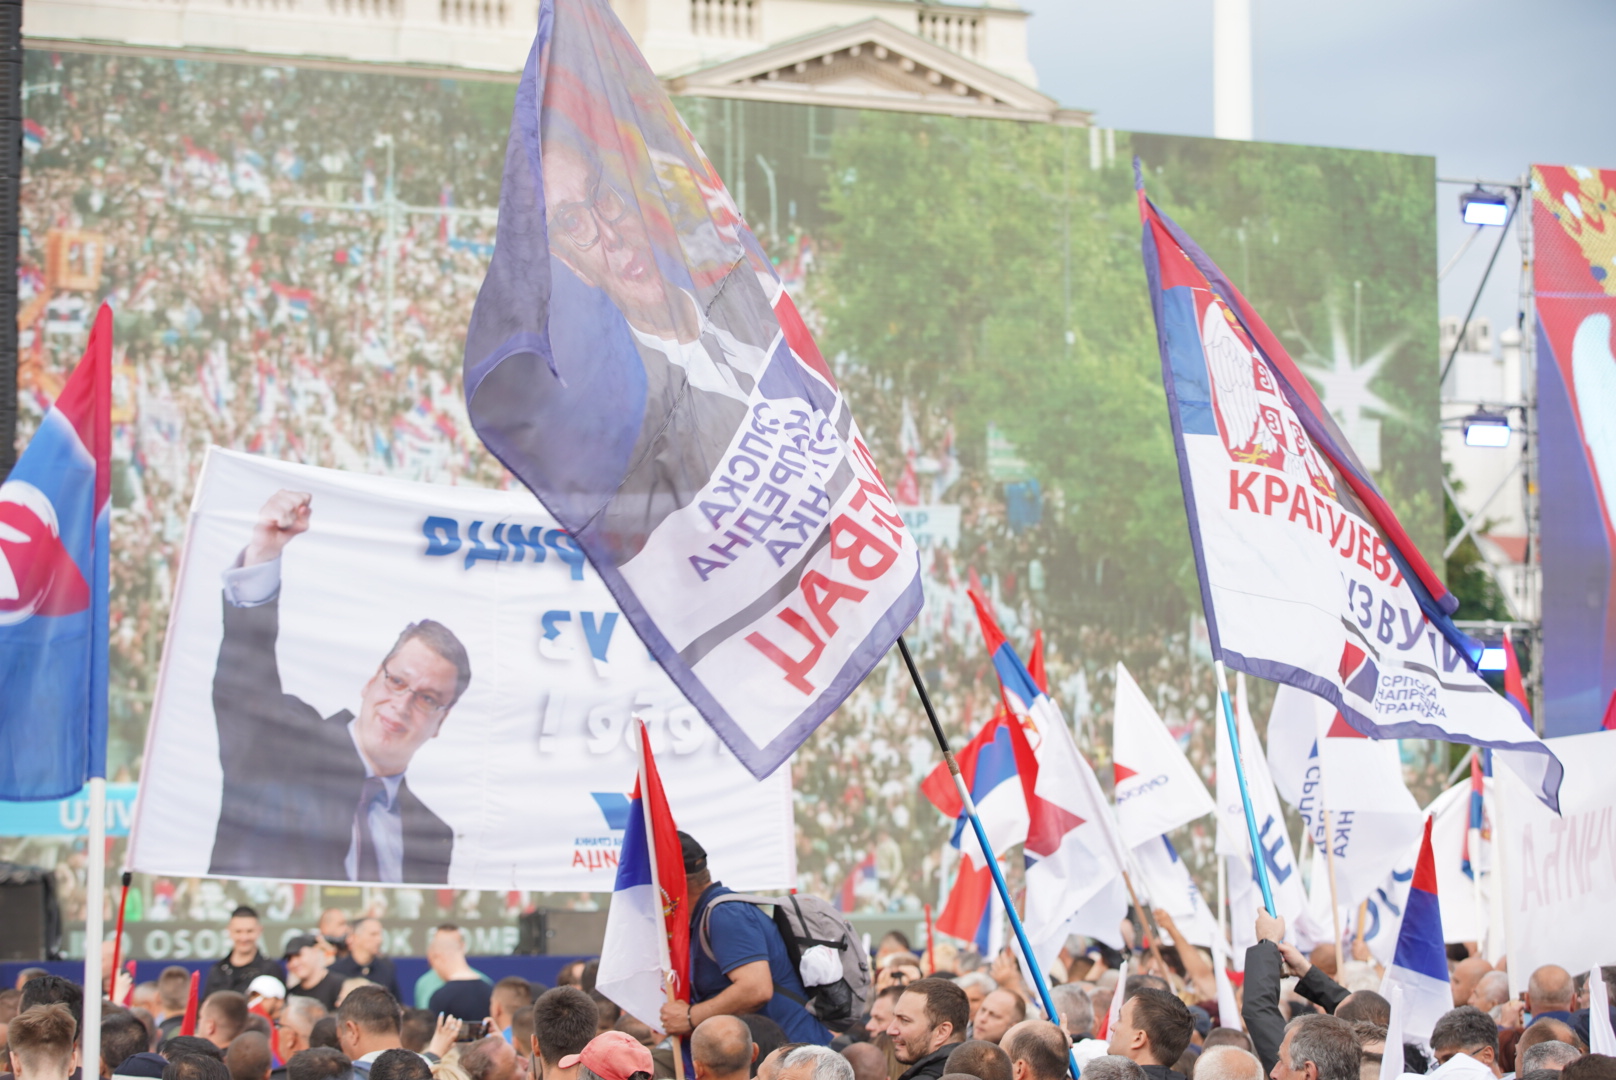 ODAZVALI SE VUČIĆU Veliki broj ljudi na skupu “Srbija nade” u Beogradu (FOTO)